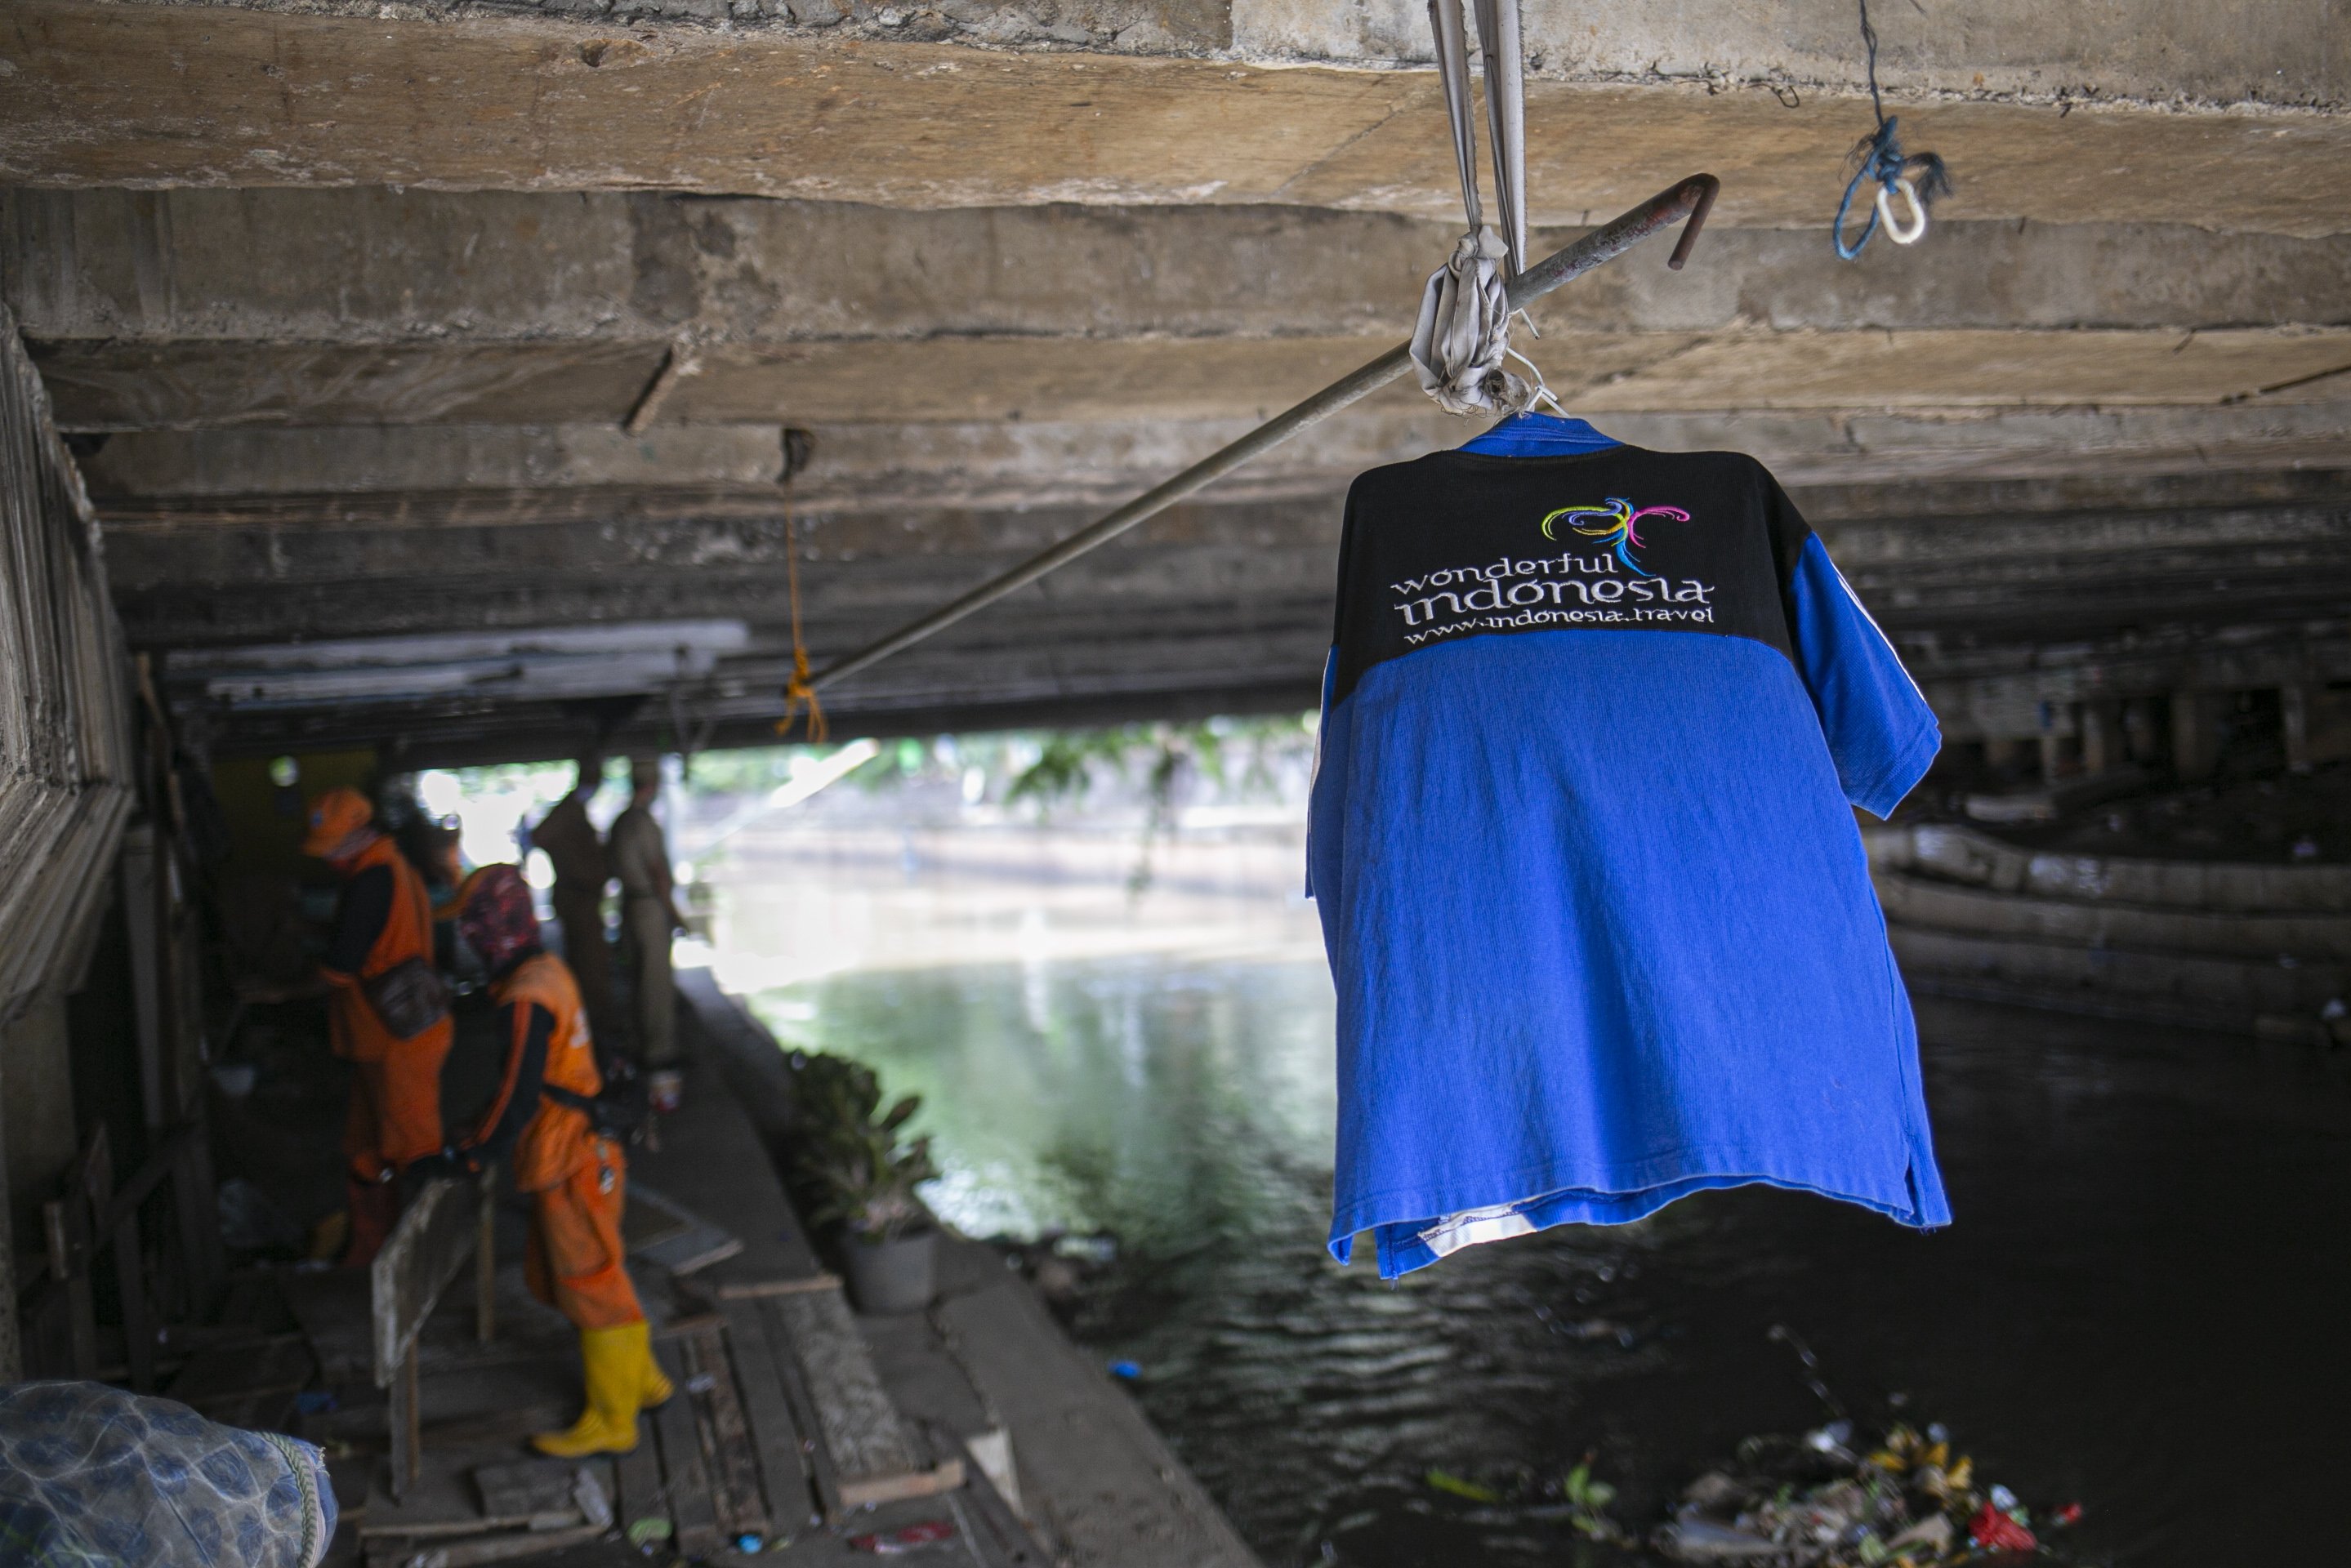 Petugas PPSU menertibkan hunian liar di kolong jembatan Jalan Proklamasi, Pegangsaan, Menteng, Jakarta, Selasa (28/12/2020). Kurang lebih sebanyak 12 hunian liar ditertibkan oleh petugas dari Kelurahan Pegangsaan, setelah sebelumnya Menteri Sosial Tri Rismaharini melakukan sidak di kolong jembatan tersebut. 